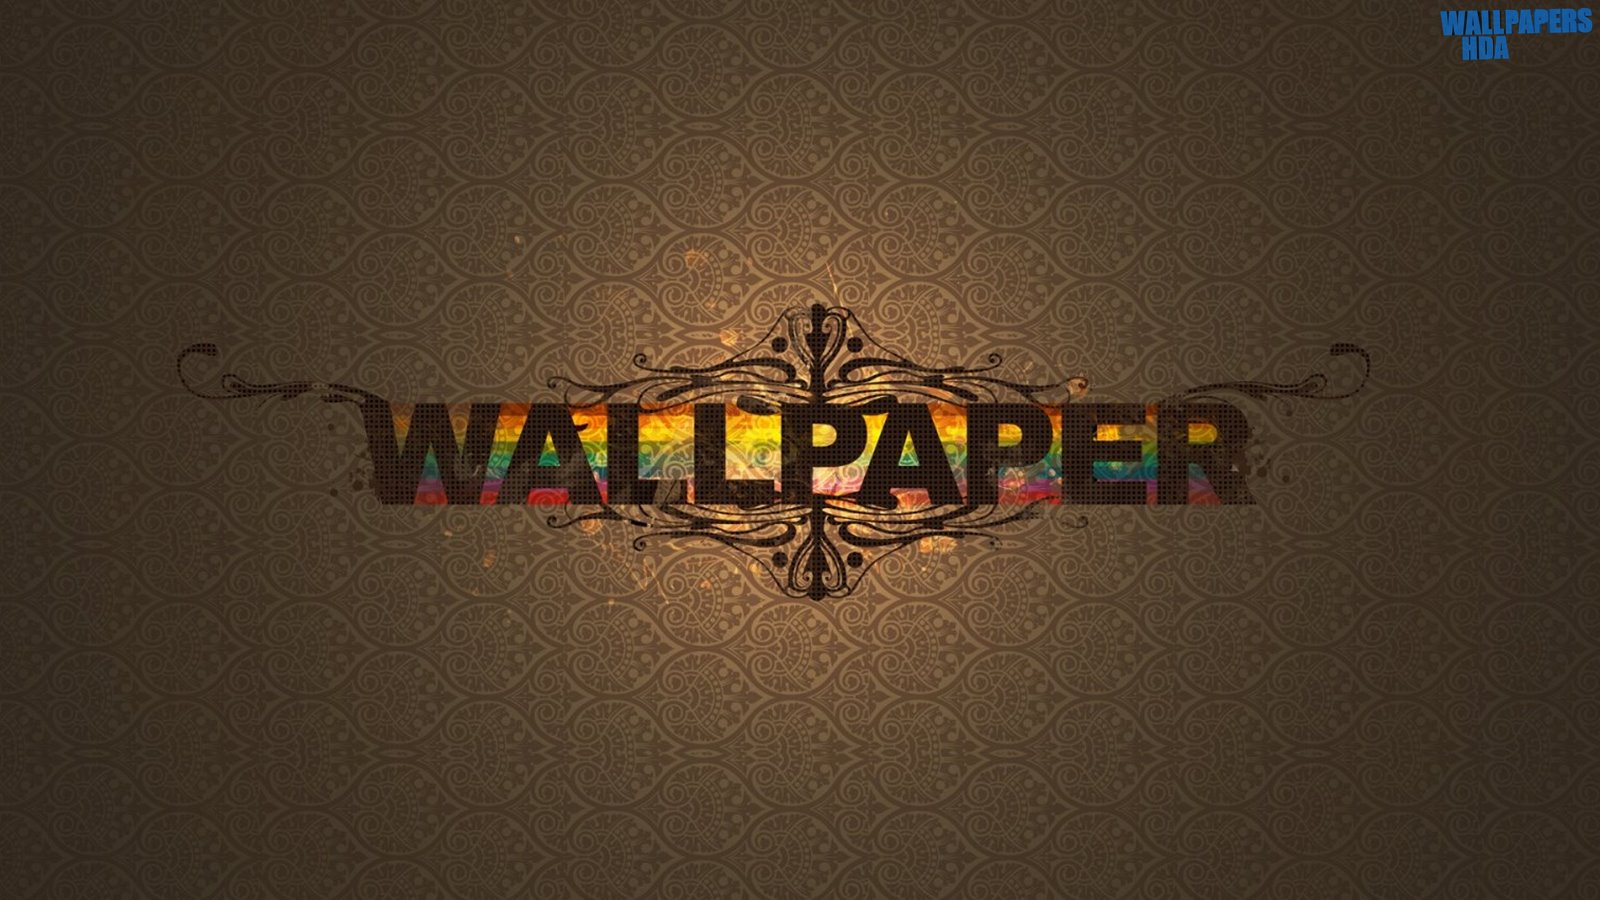 Wallpaper vectorize wallpaper 1600x900